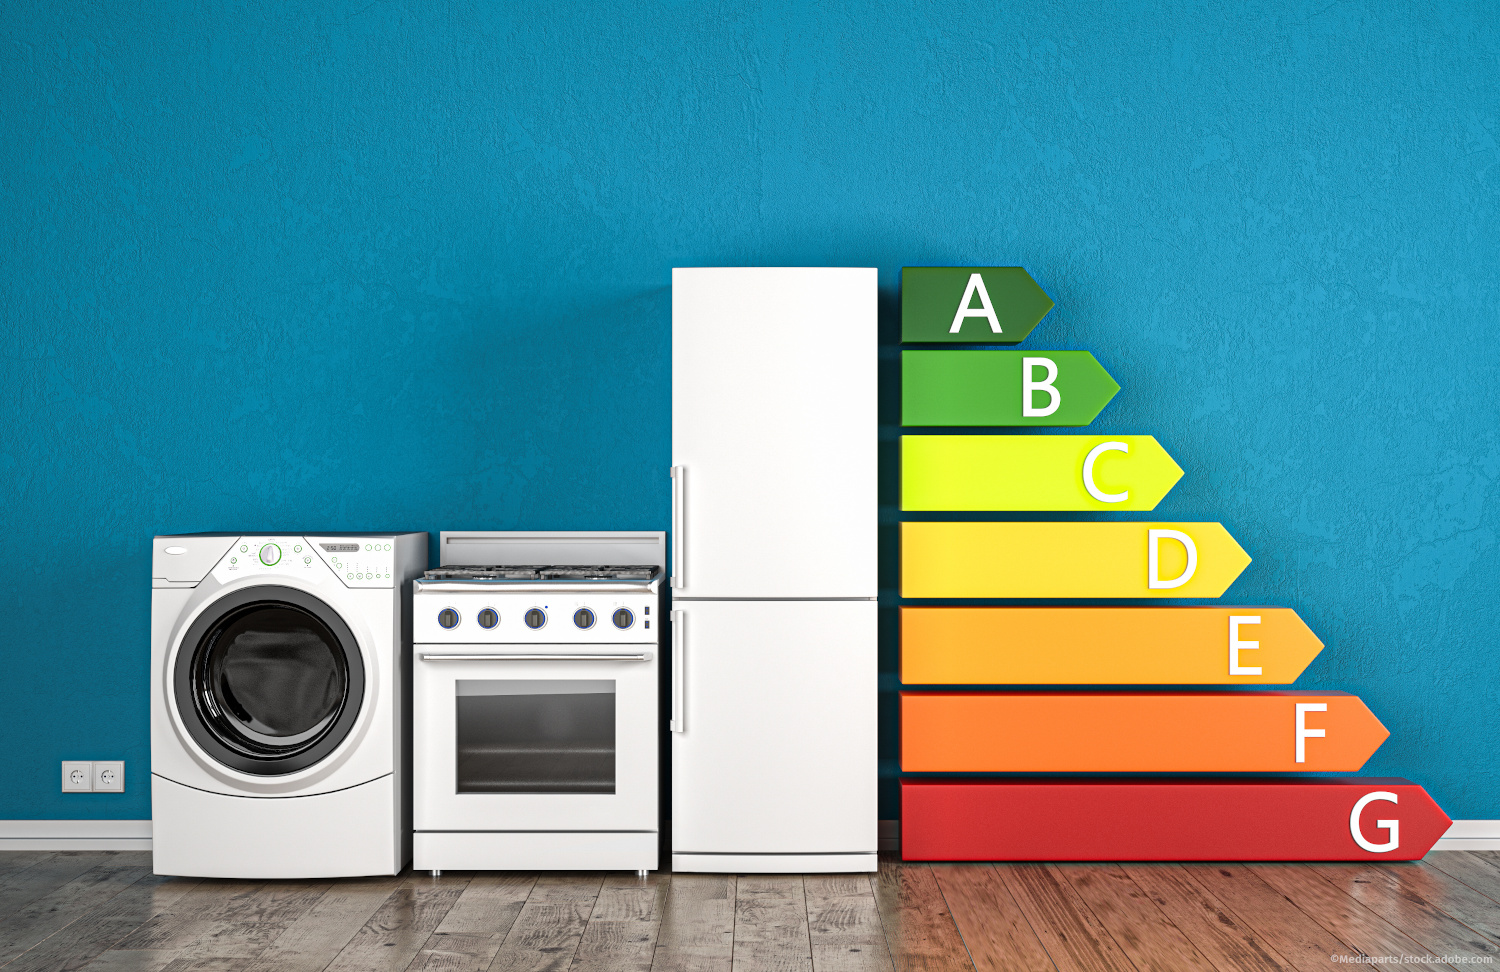 Eine Waschmaschine, ein Backofen und ein Kühlschrank vor einer blauen Wand. Daneben sind die Kategorien A-G der Energieeffizenzklassen als bunte Striche dargestellt.